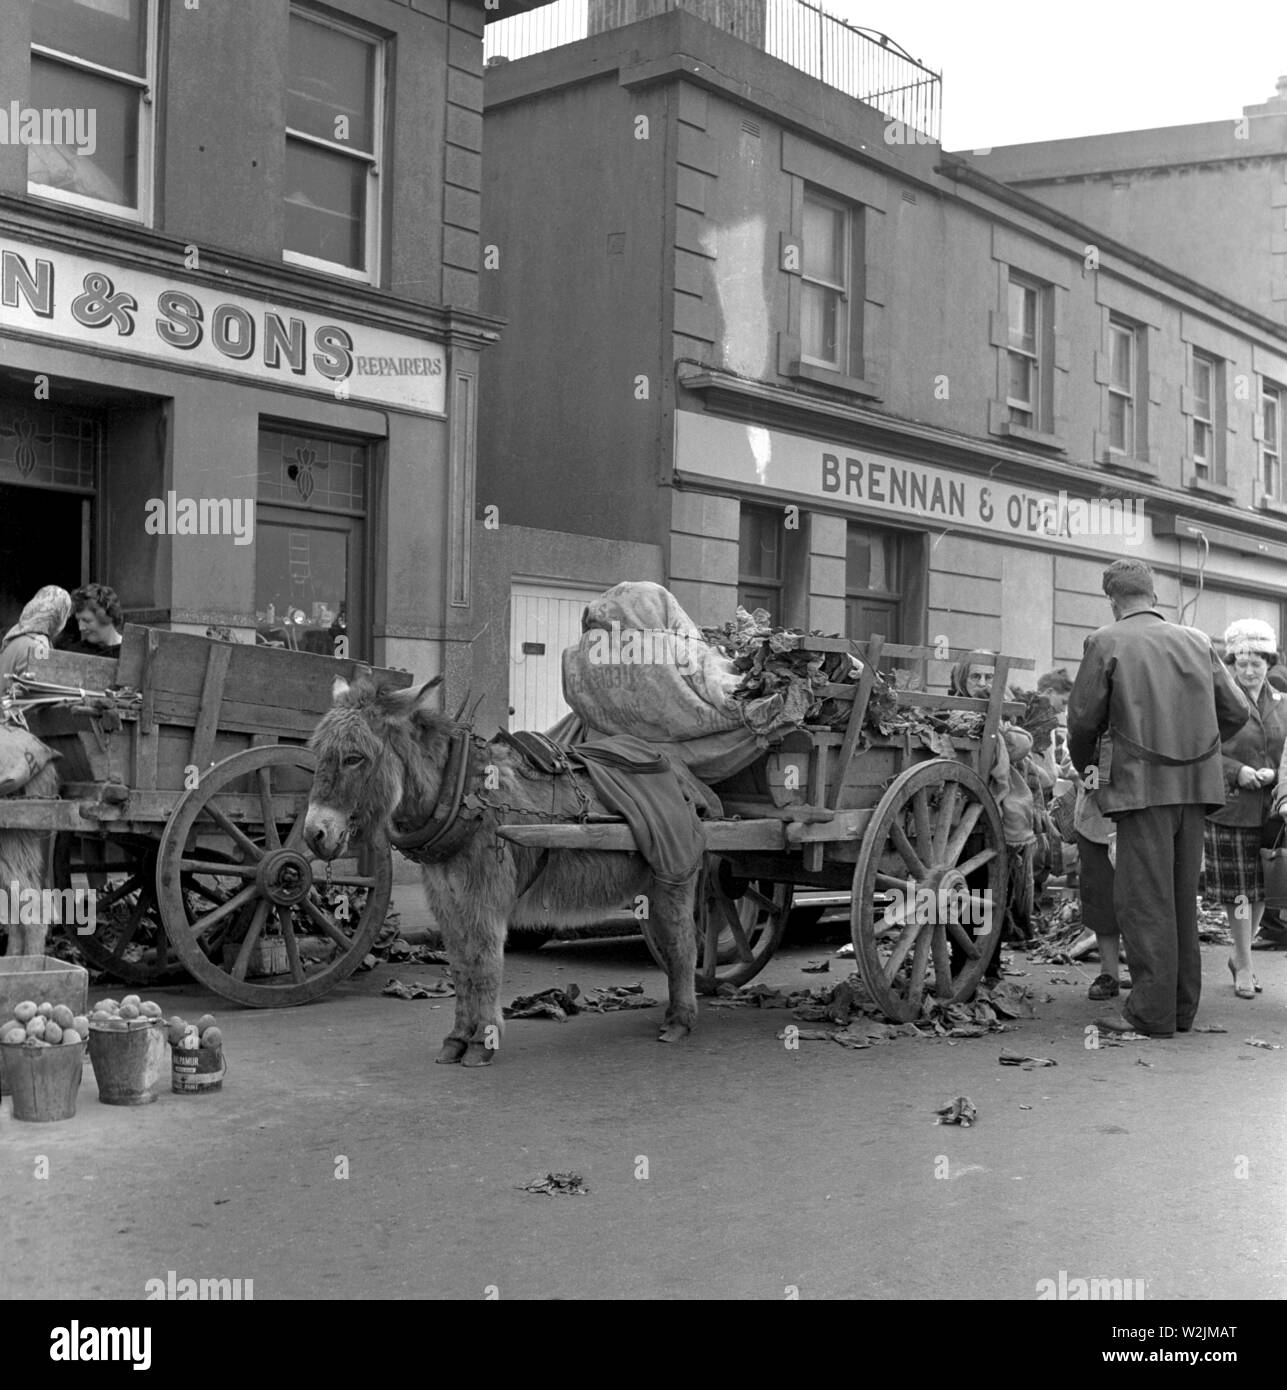 La vente de choux et de pommes de terre dans la rue de charrettes tirées par un âne, probablement près de la zone de Sandyford à Dublin, Irlande c1960 Photo de Tony Henshaw Banque D'Images